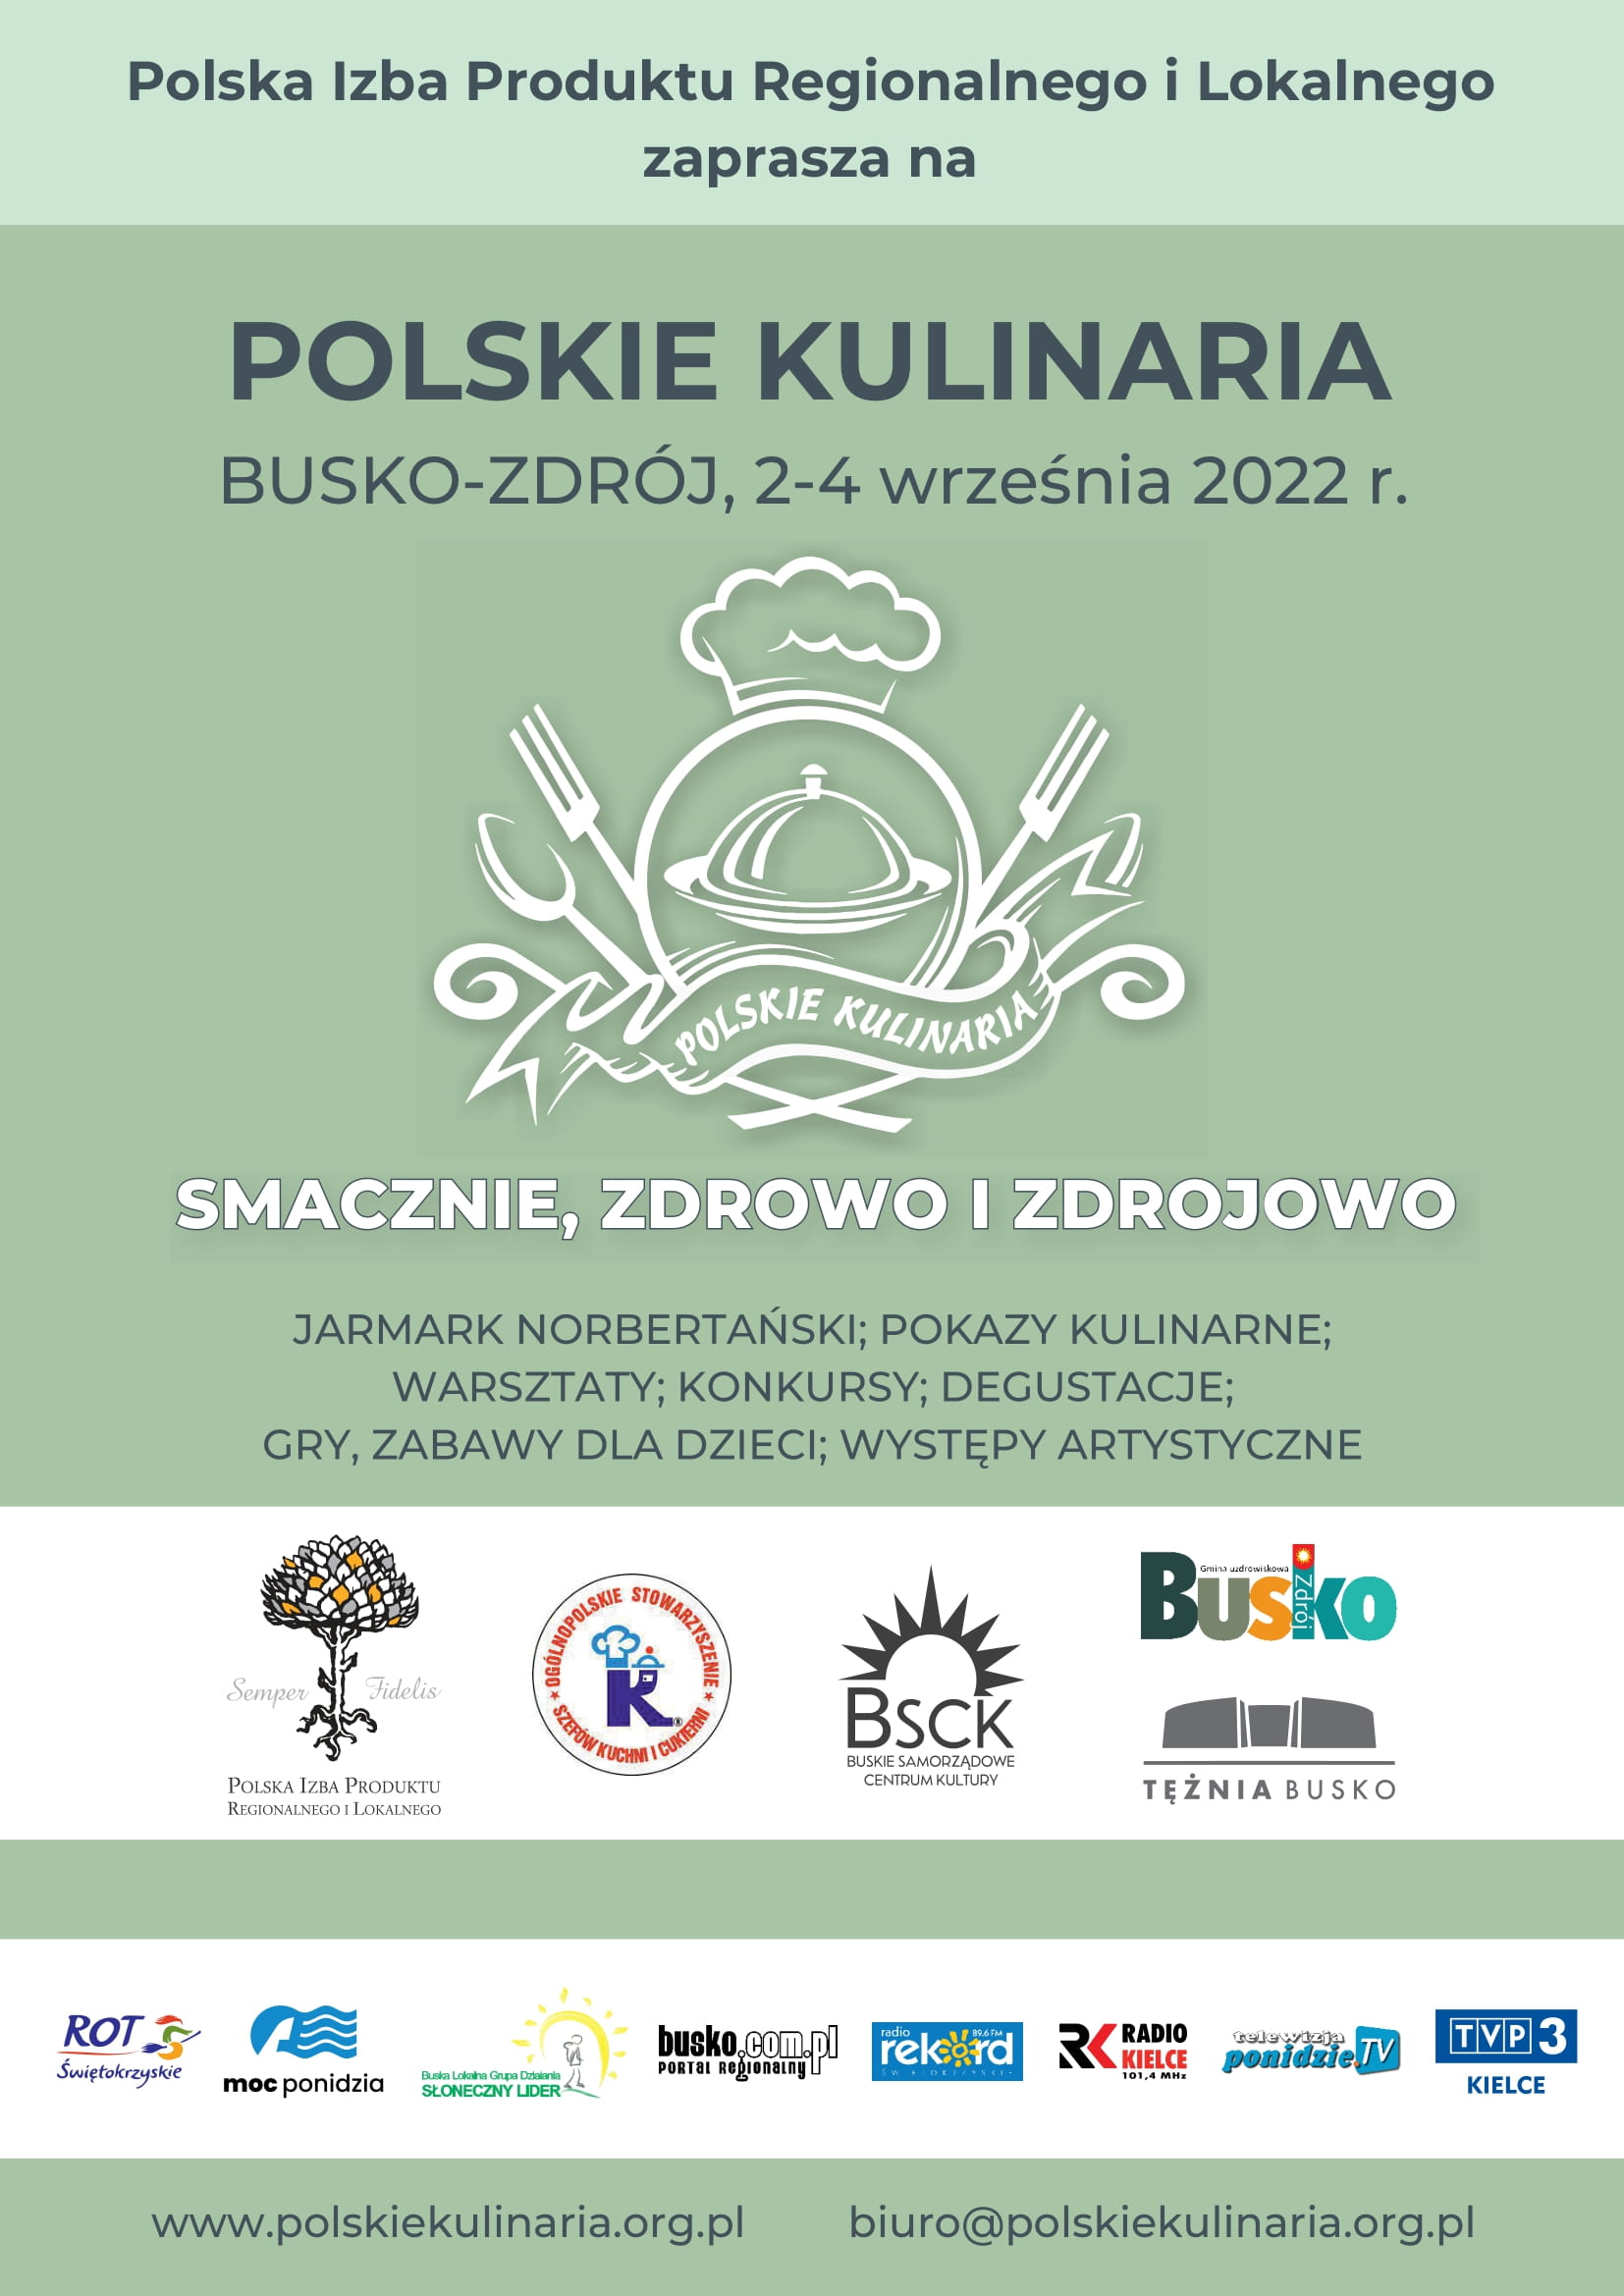 Plakat promujący imprezę Polskie Kulinaria 